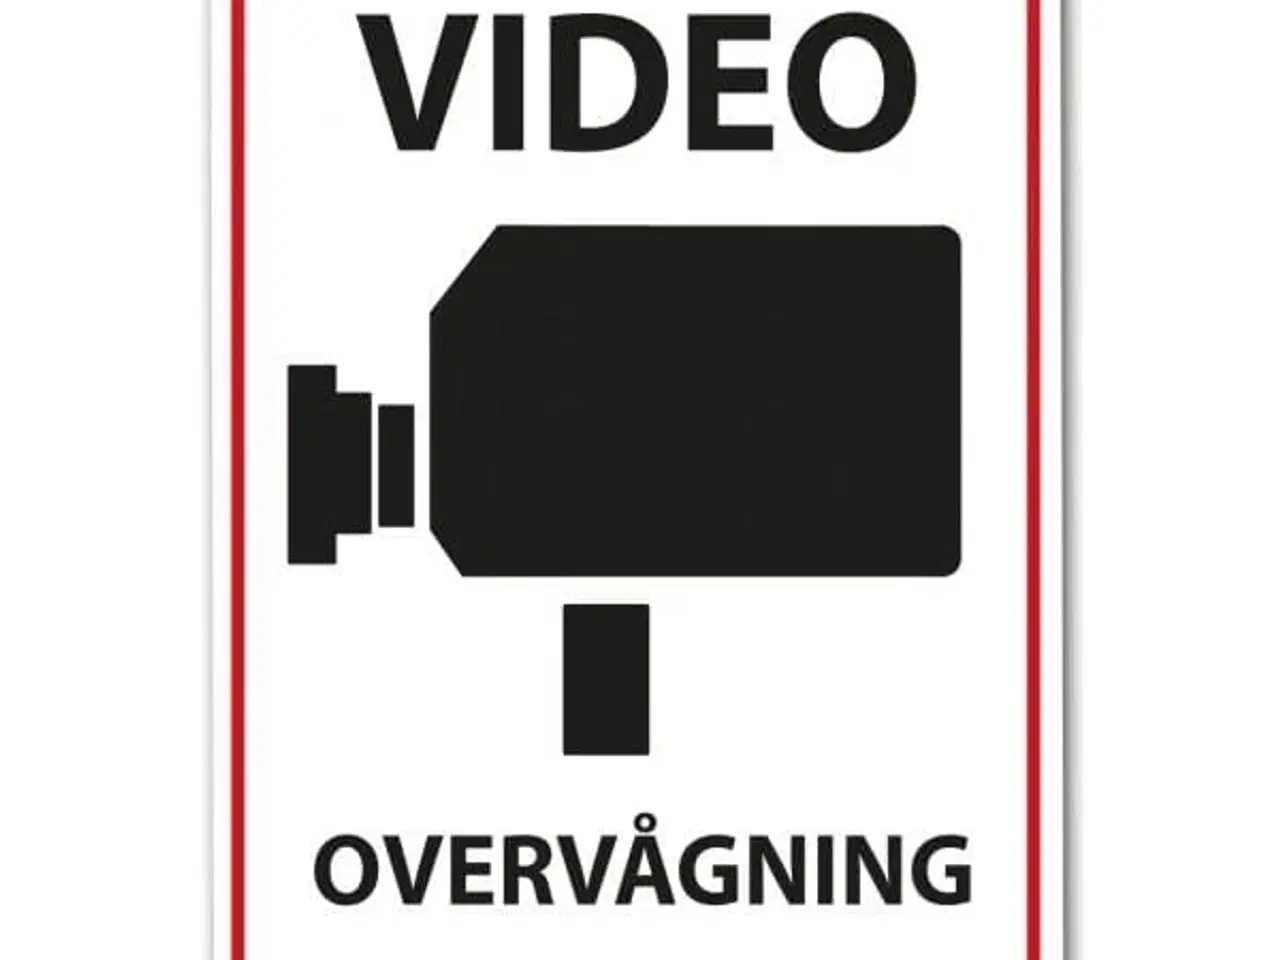 Billede 2 - Videoovervågning klistermærke